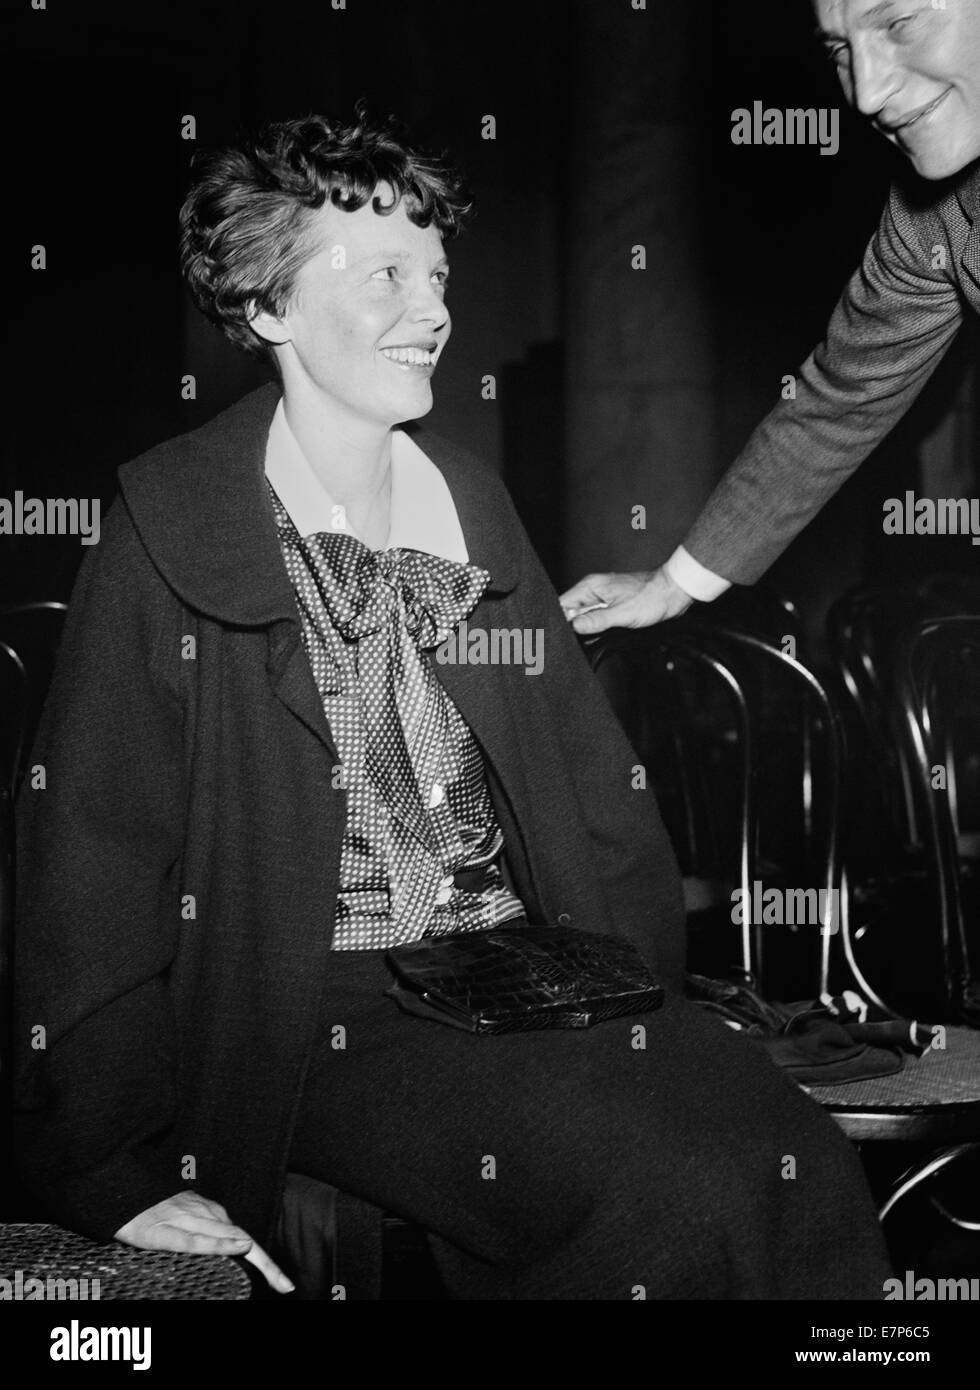 Photo d'époque de la pionnière et auteure de l'aviation américaine Amelia Earhart (1897 – déclarée morte en 1939) – Earhart et son navigateur Fred Noonan ont connu une célèbre disparition en 1937 alors qu'elle essayait de devenir la première femme à effectuer un vol de navigation du globe. Photo prise en 1936. Banque D'Images